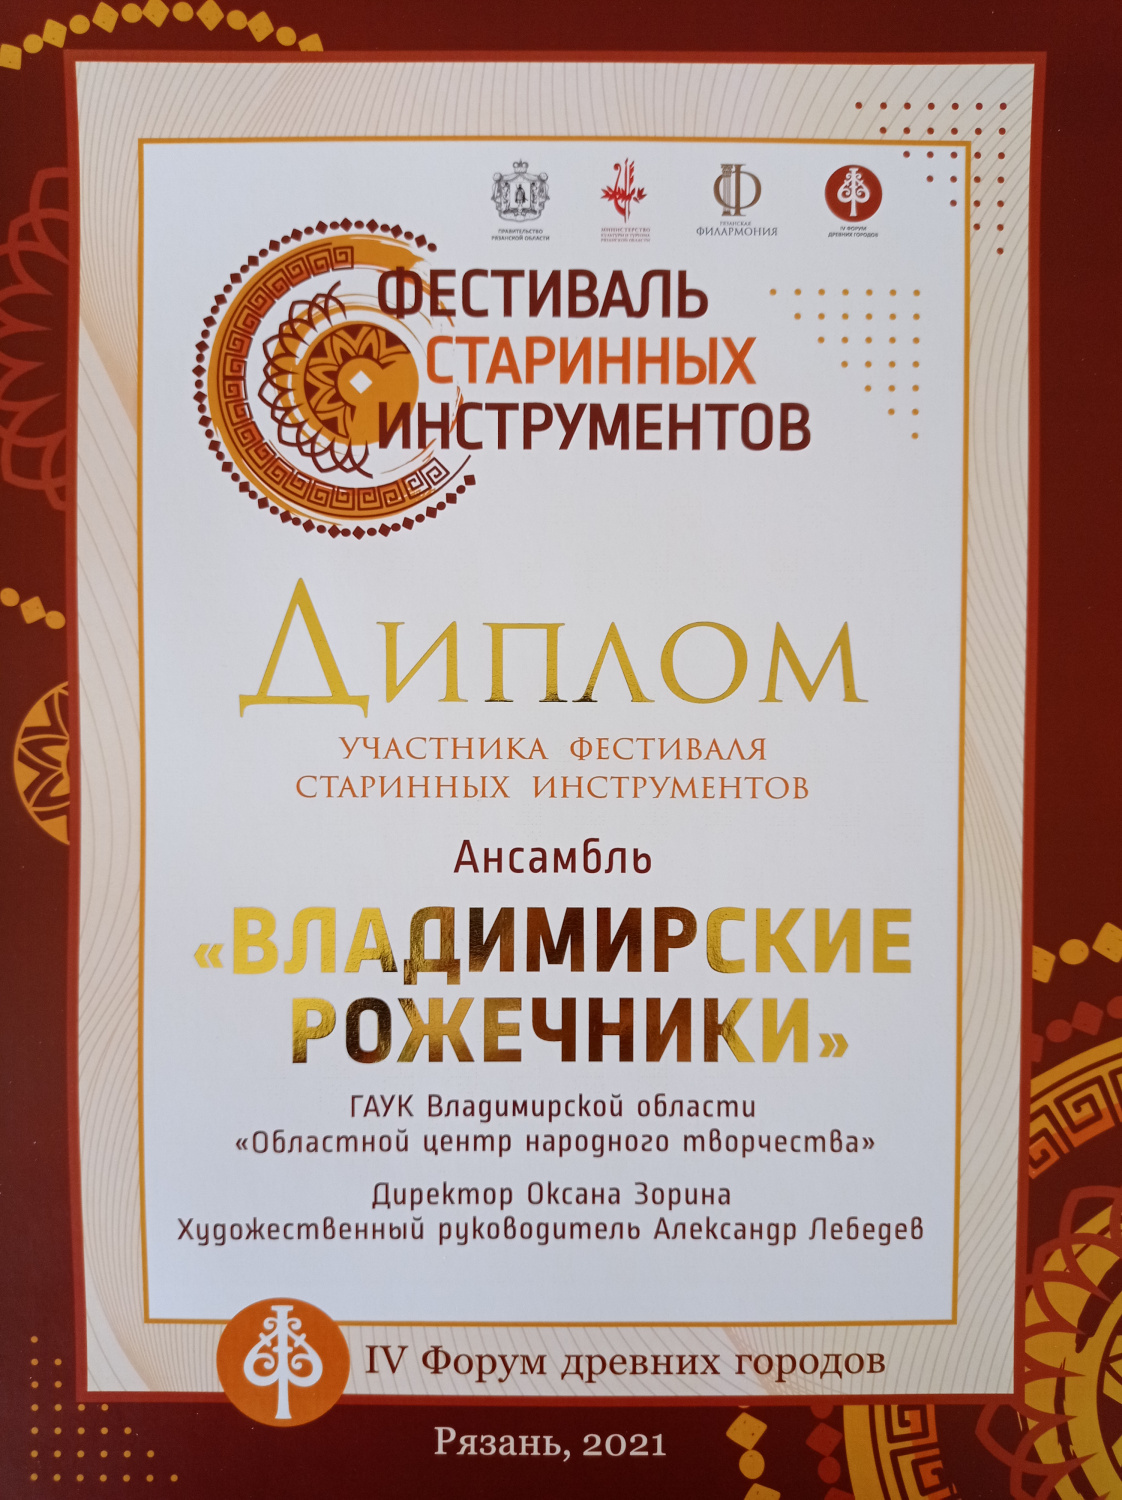 Диплом участника фестиваля старинных инструментов, г. Рязань